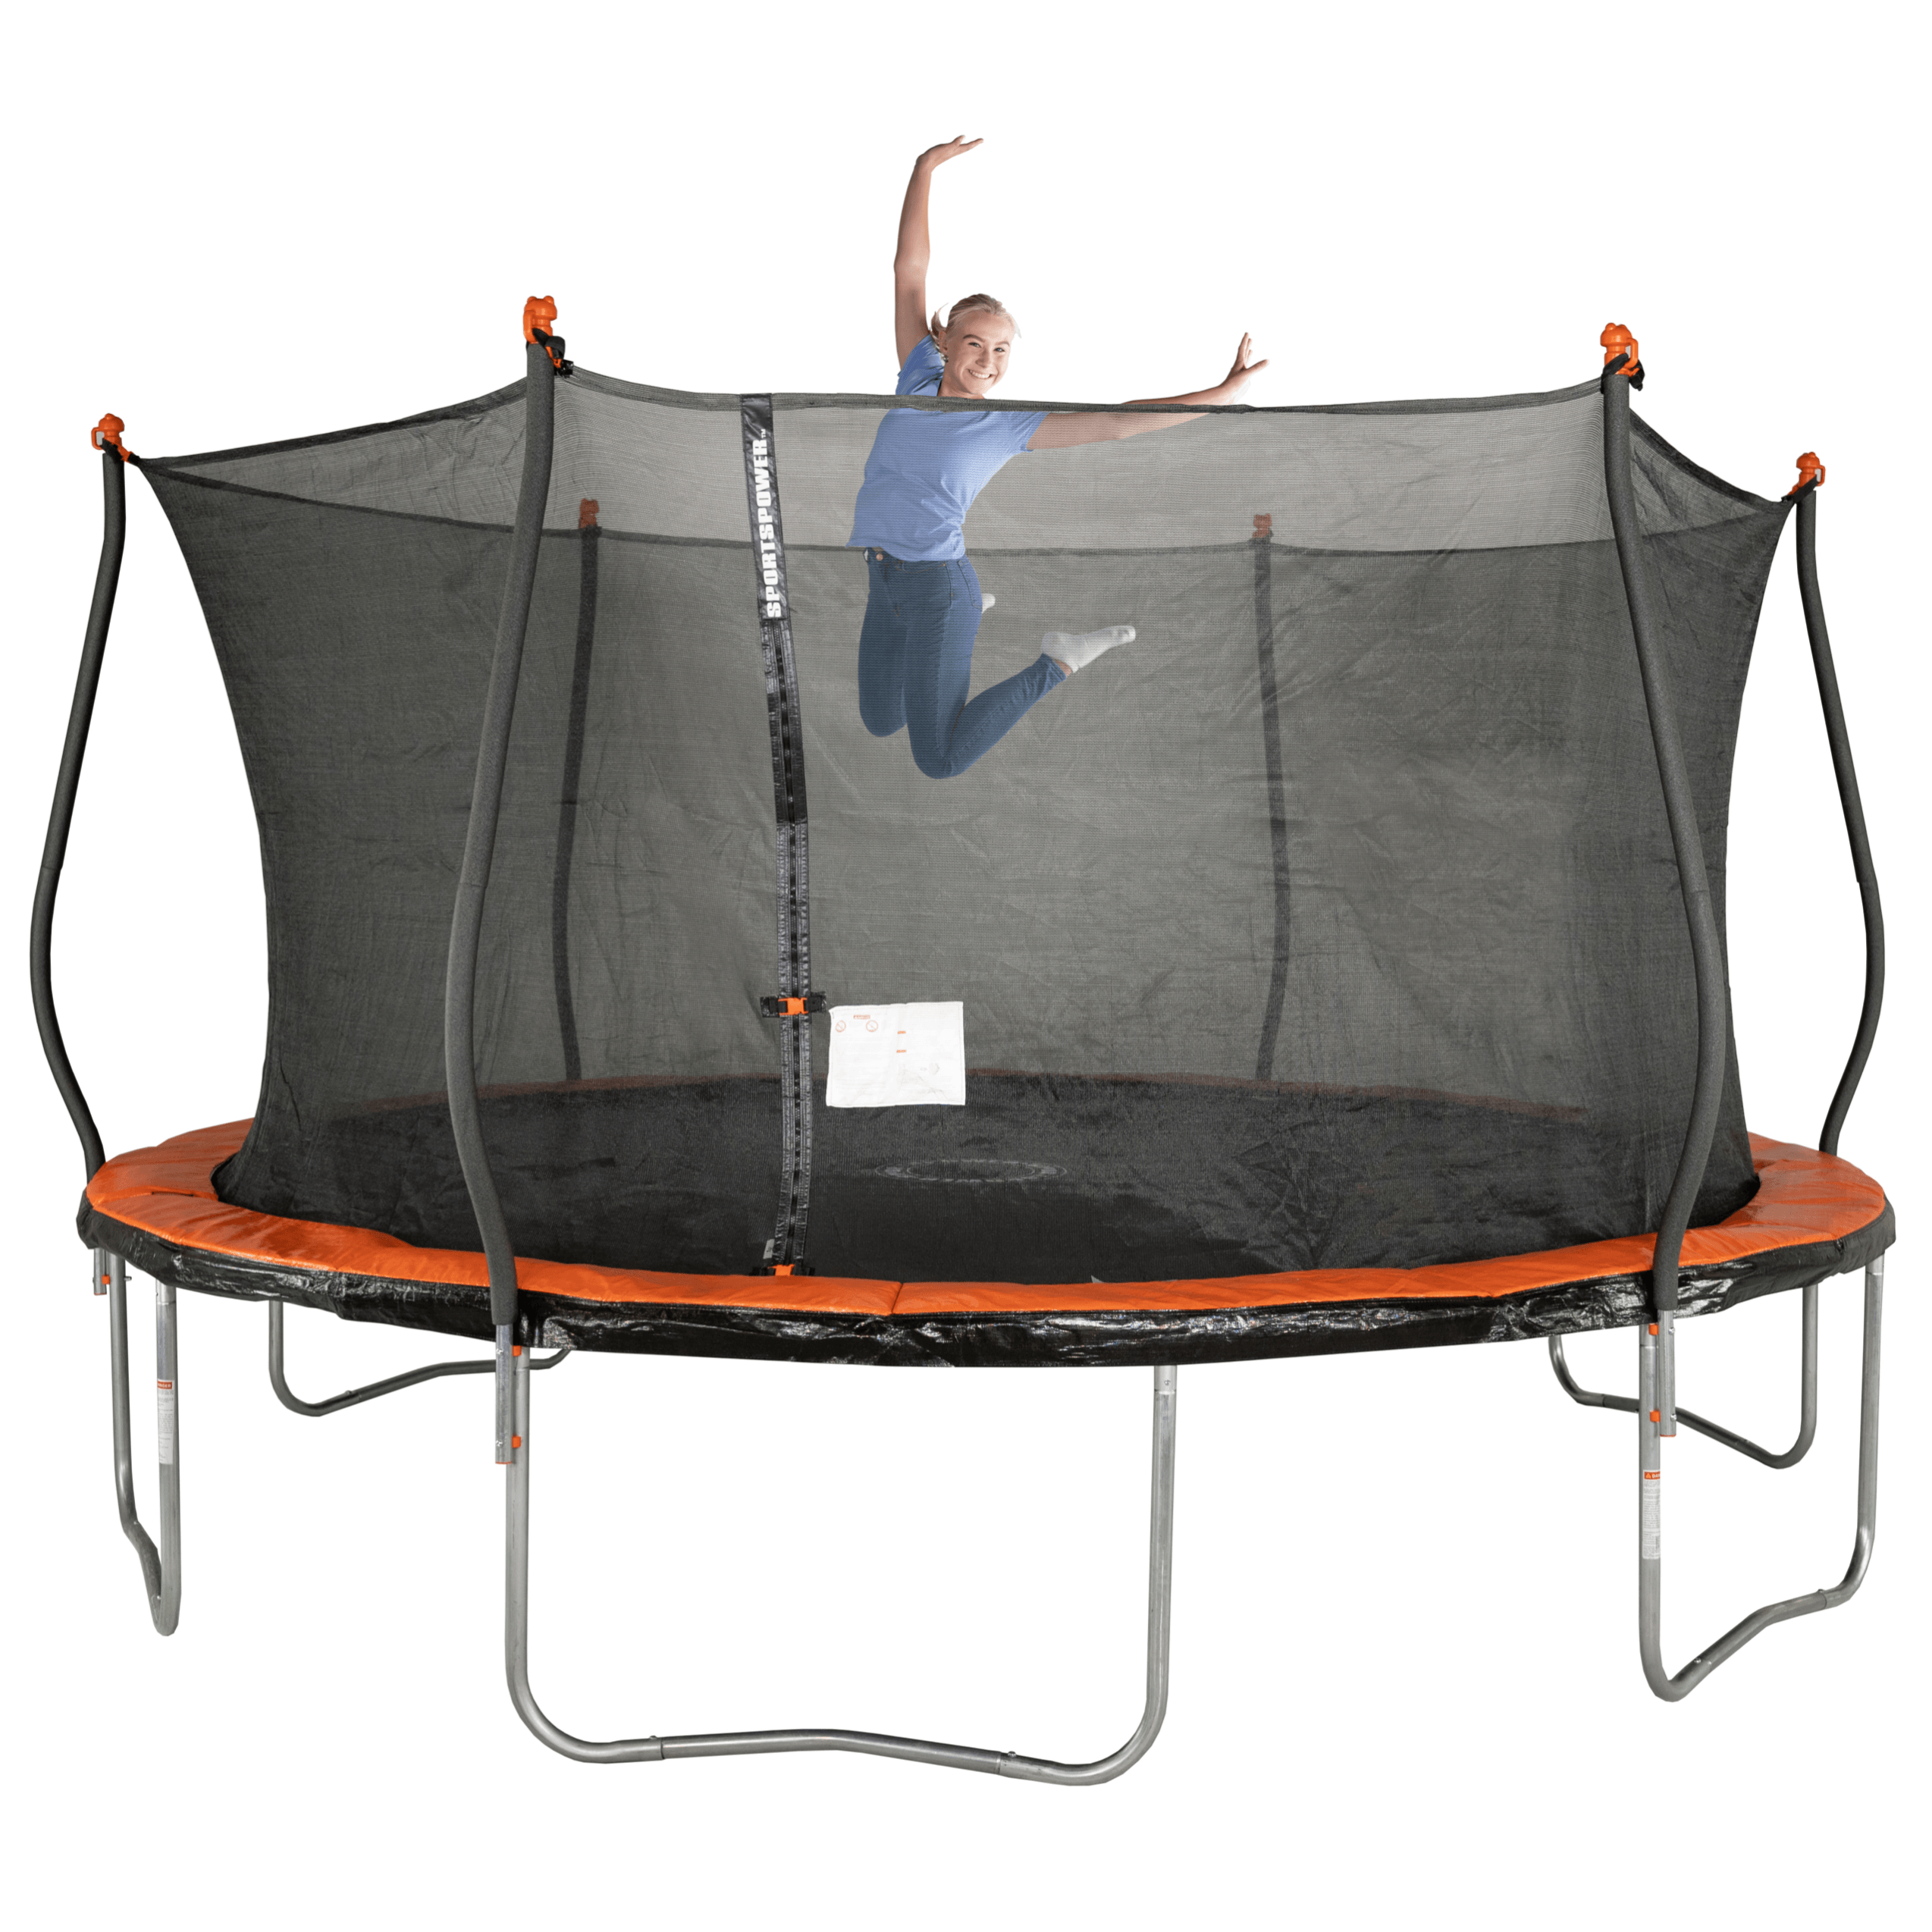 Bounce Pro 15' Trampoline, Basic Safety Enclosure, Orange - image 1 of 7